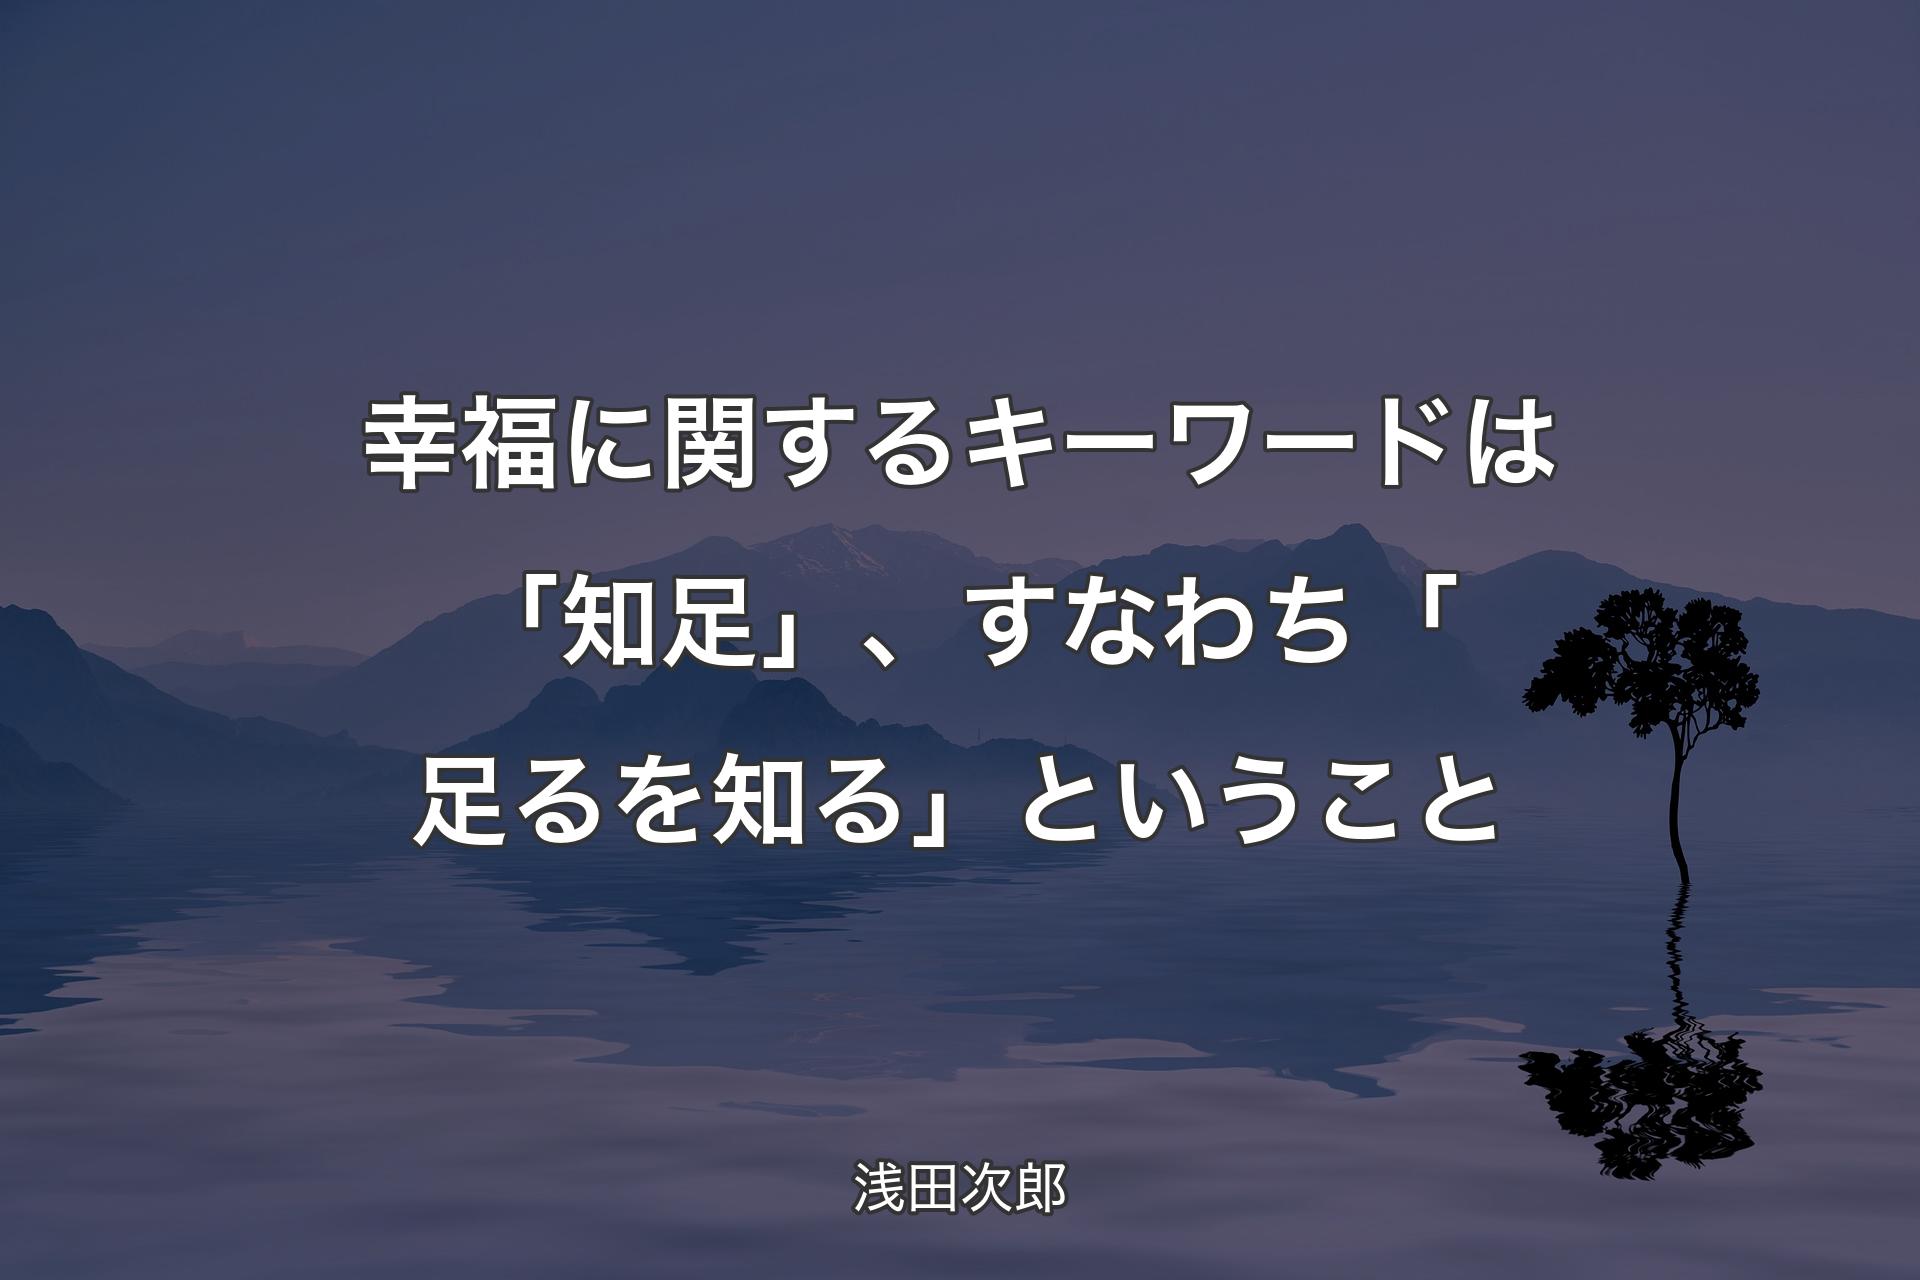 【背景4】幸福に関するキーワードは「知足」、すなわち「足るを知る」ということ - 浅田次郎